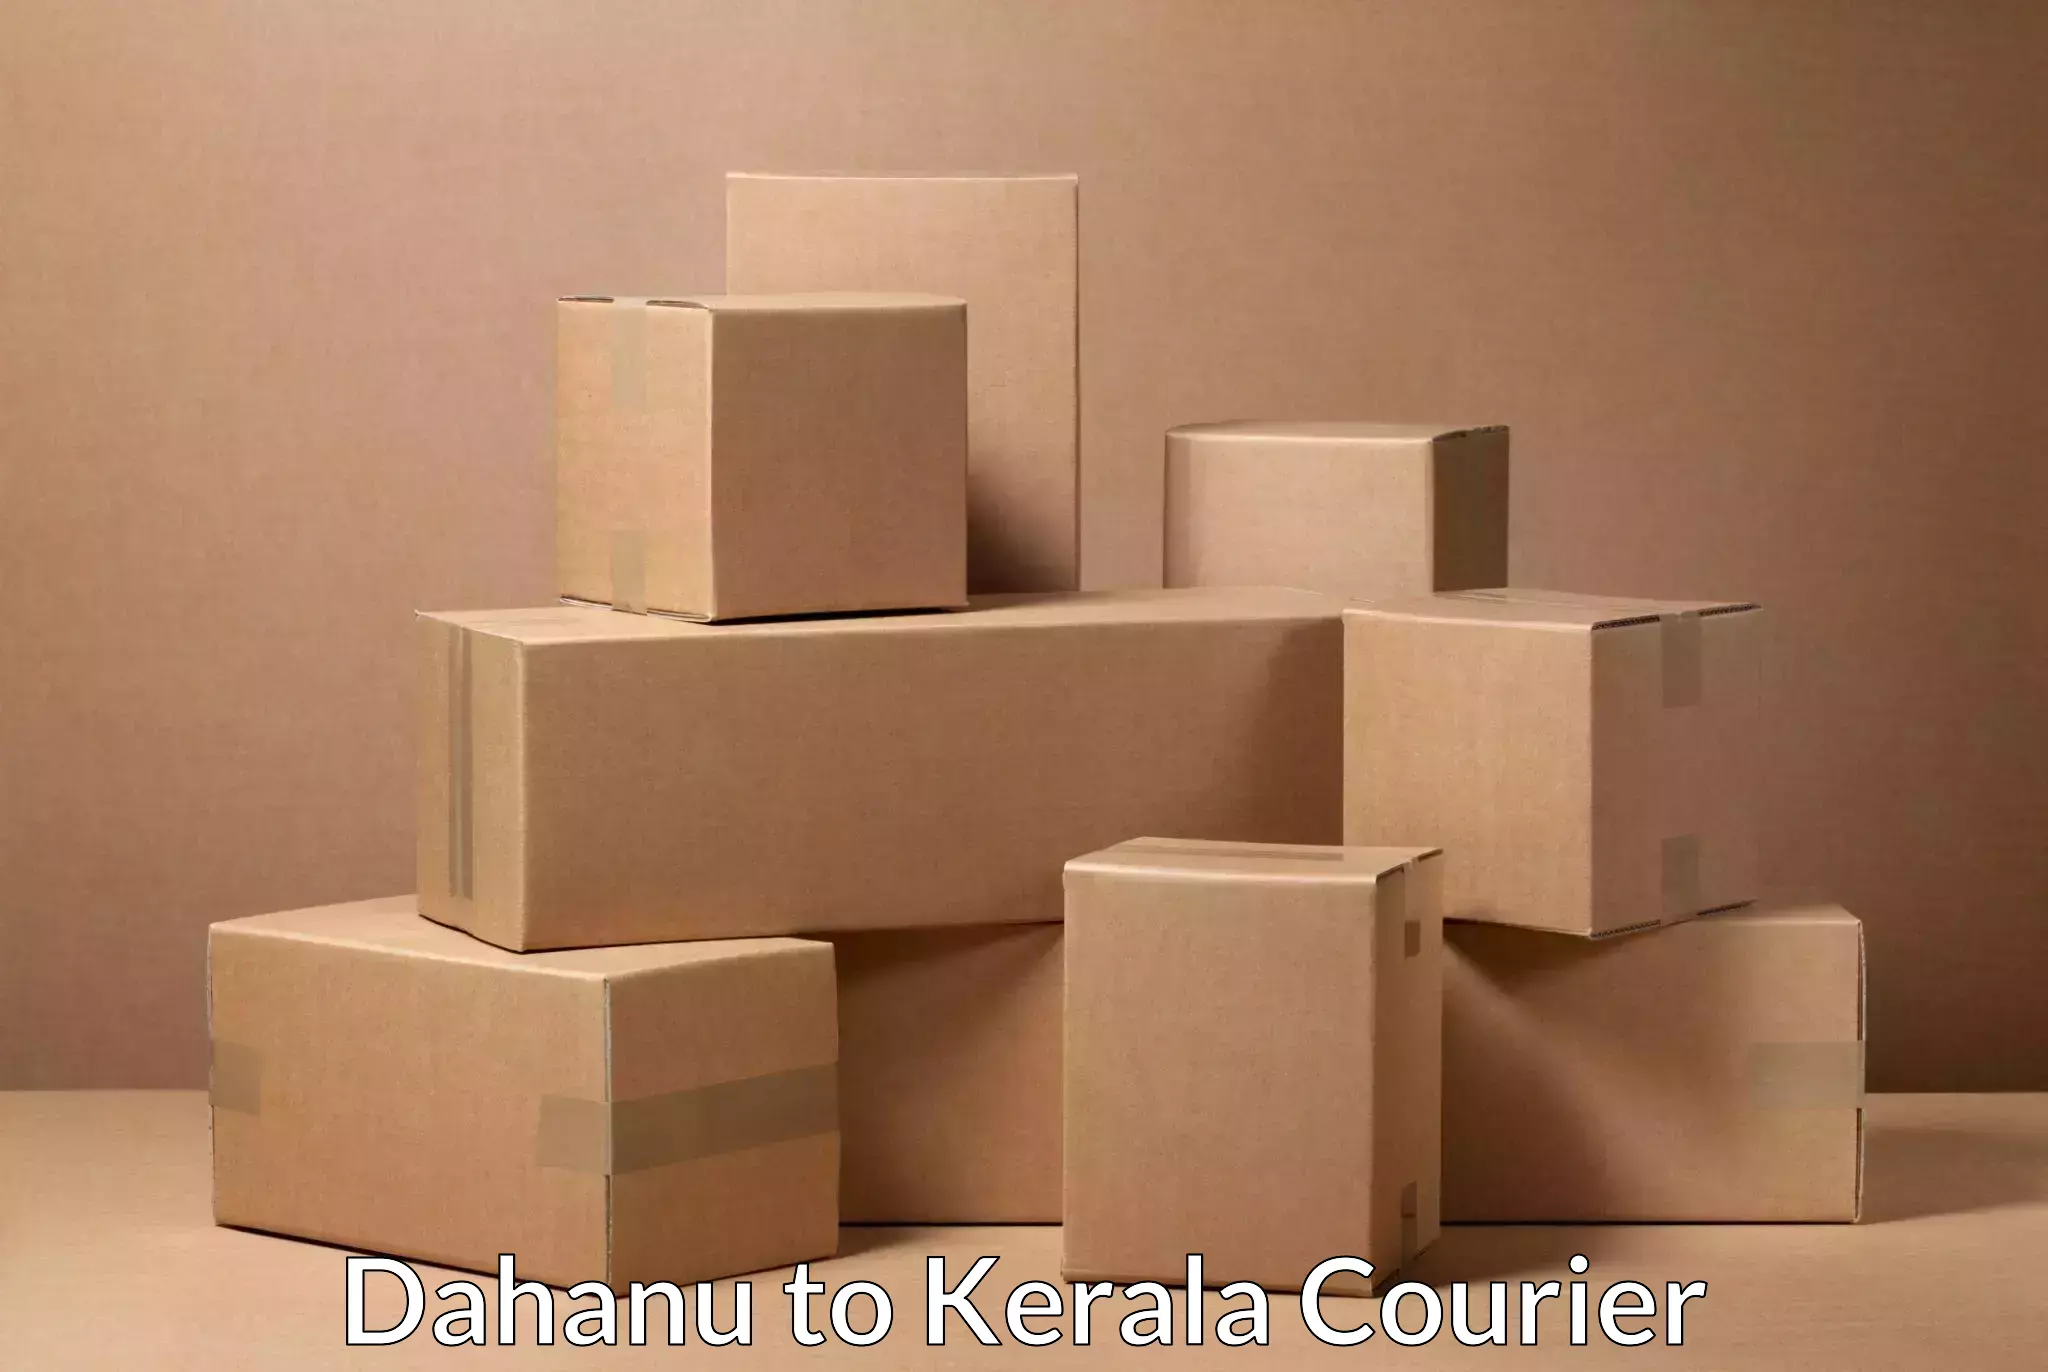 Automated parcel services Dahanu to Alathur Malabar